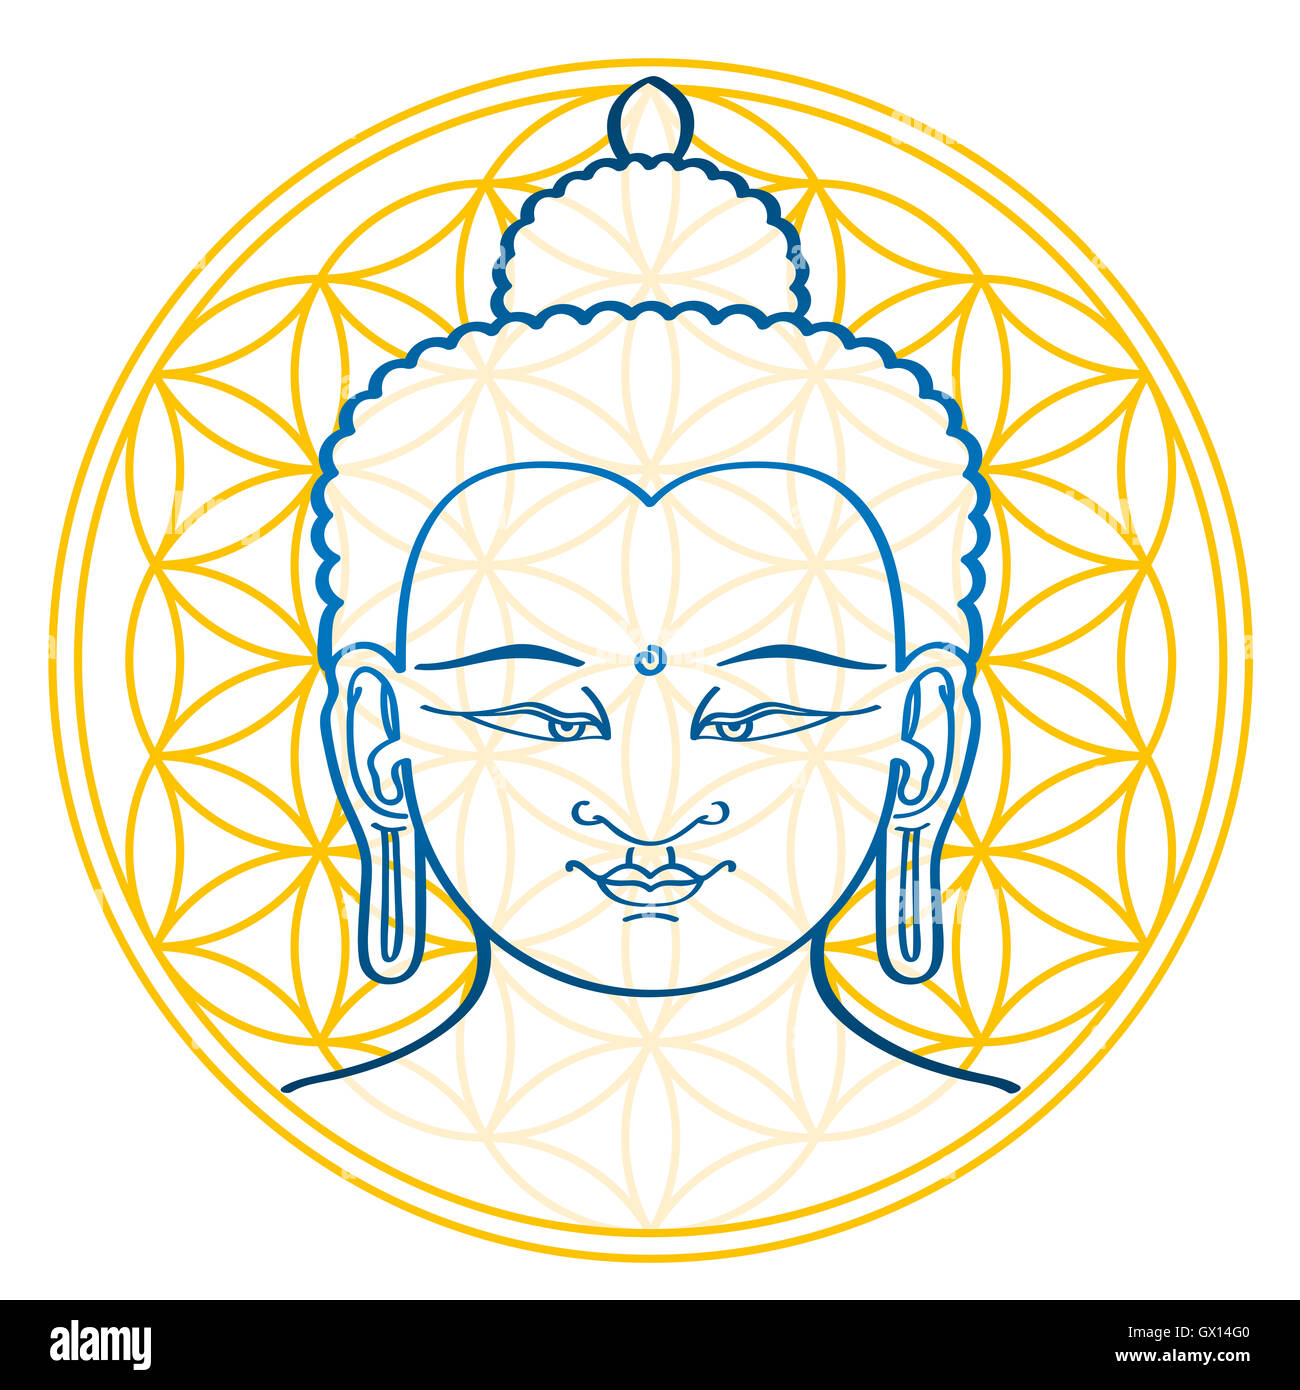 Buda y la Flor de la vida, una figura geométrica y antiguo símbolo, compuesto de múltiples uniformemente espaciadas, círculos superpuestos. Foto de stock